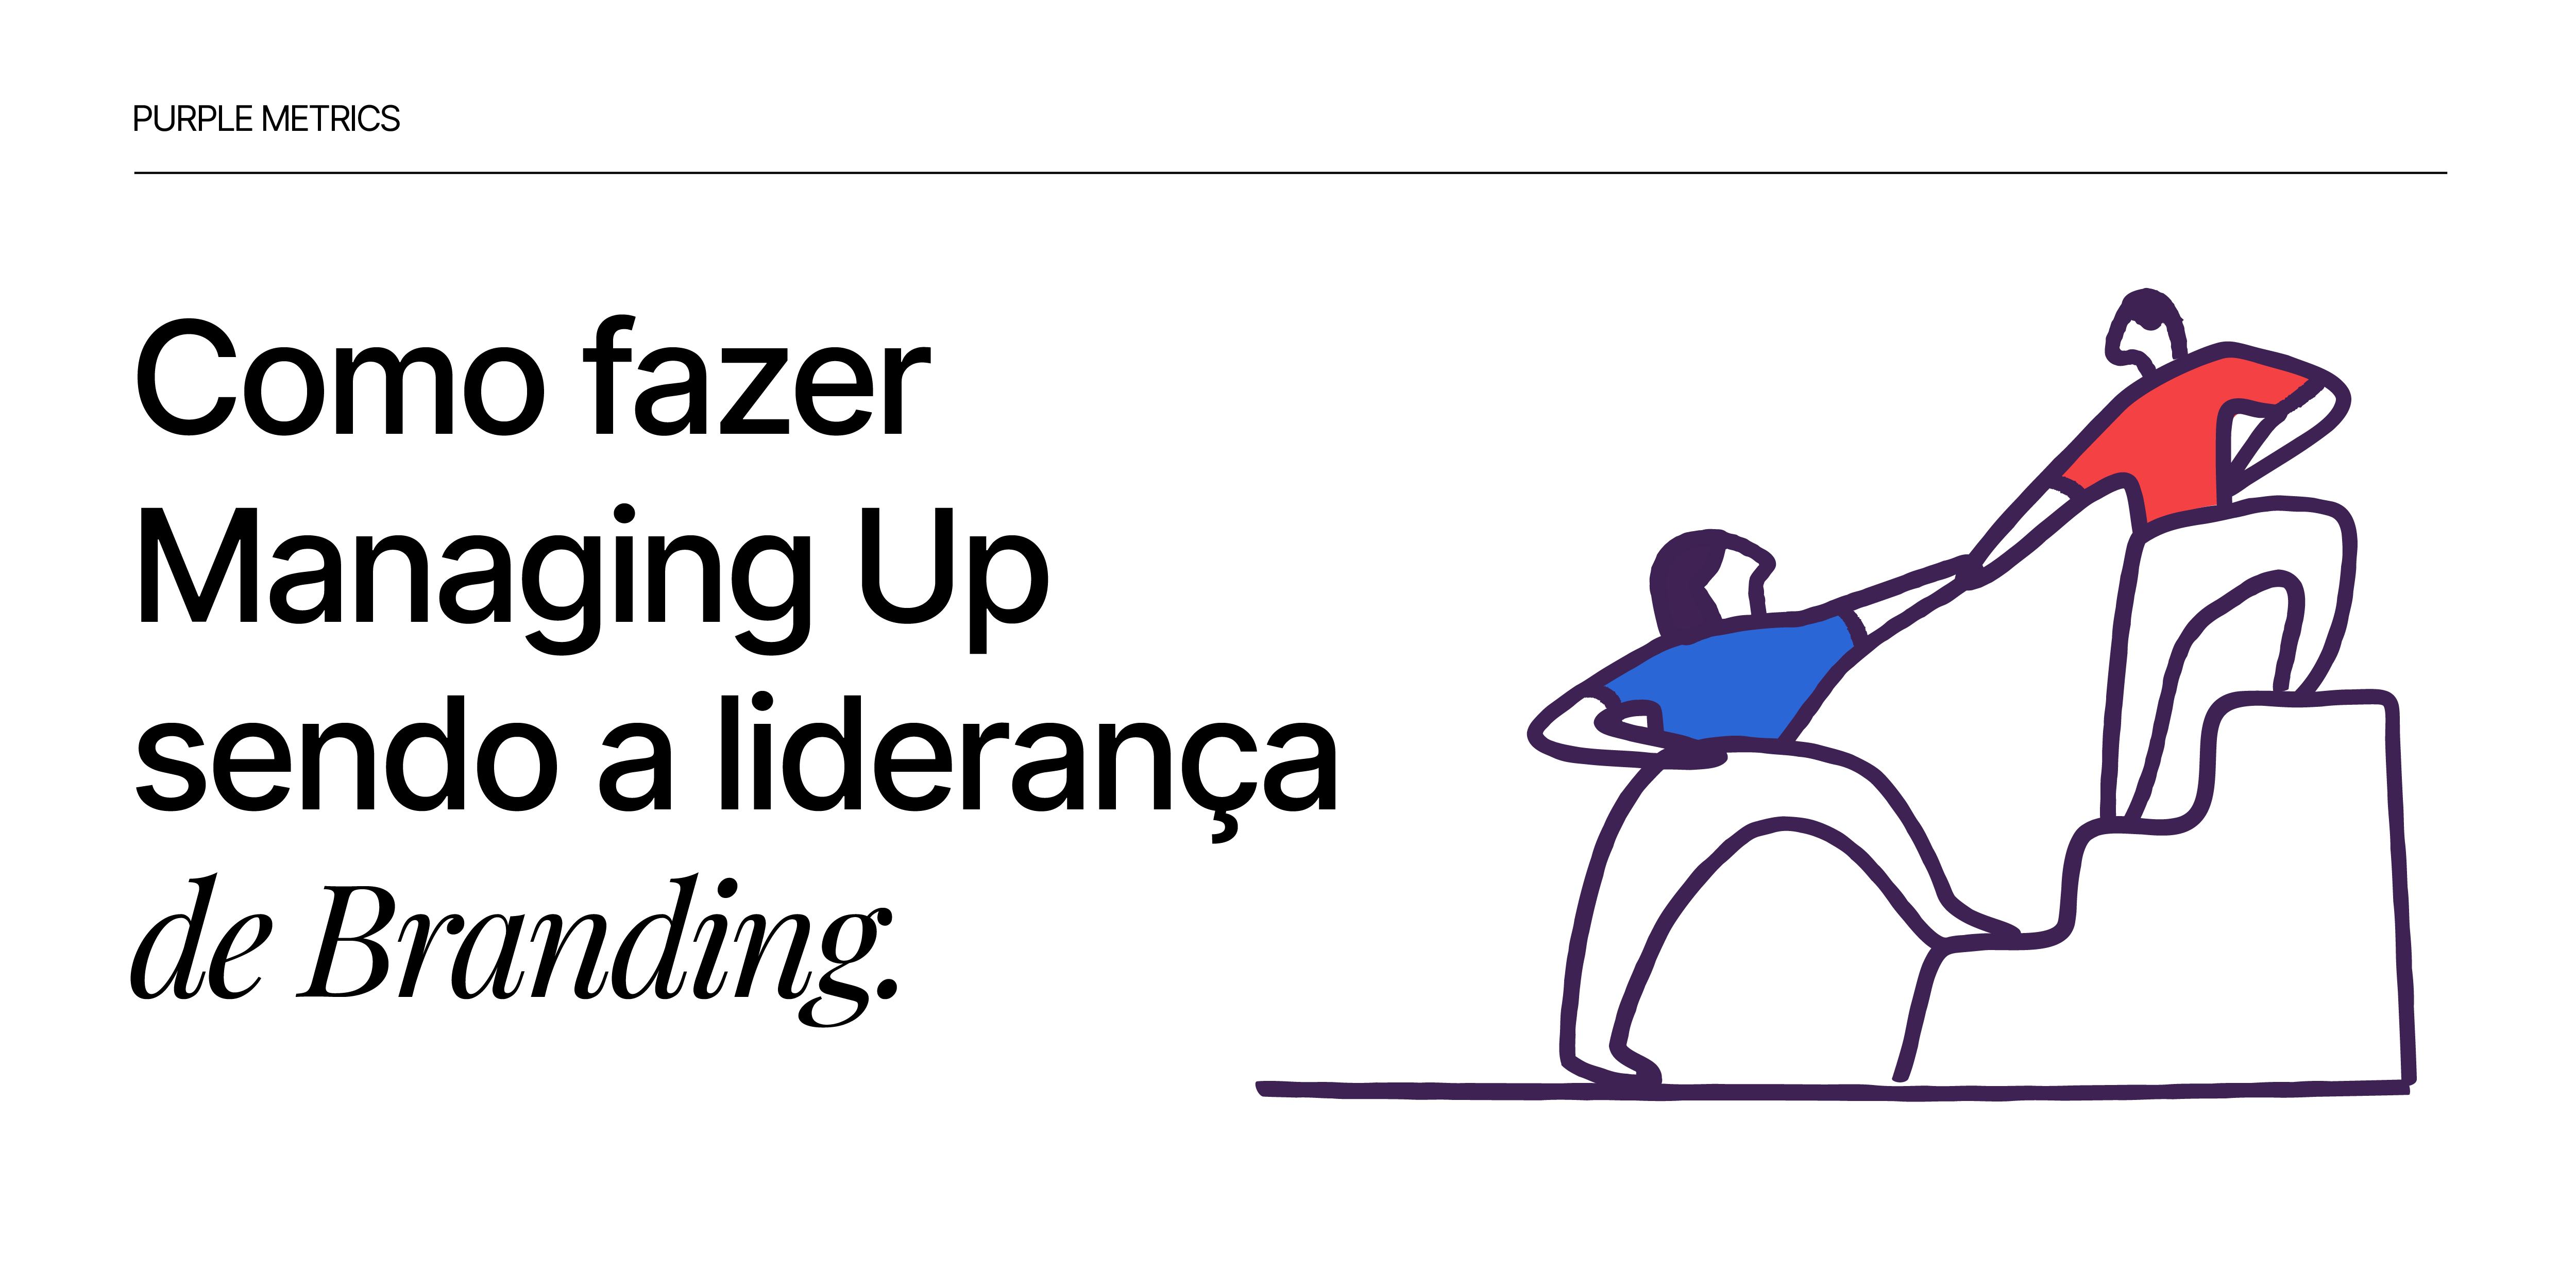 Como fazer managing up sendo a liderança de branding - artigo Lucas Yokota, COO do Purple Metrics